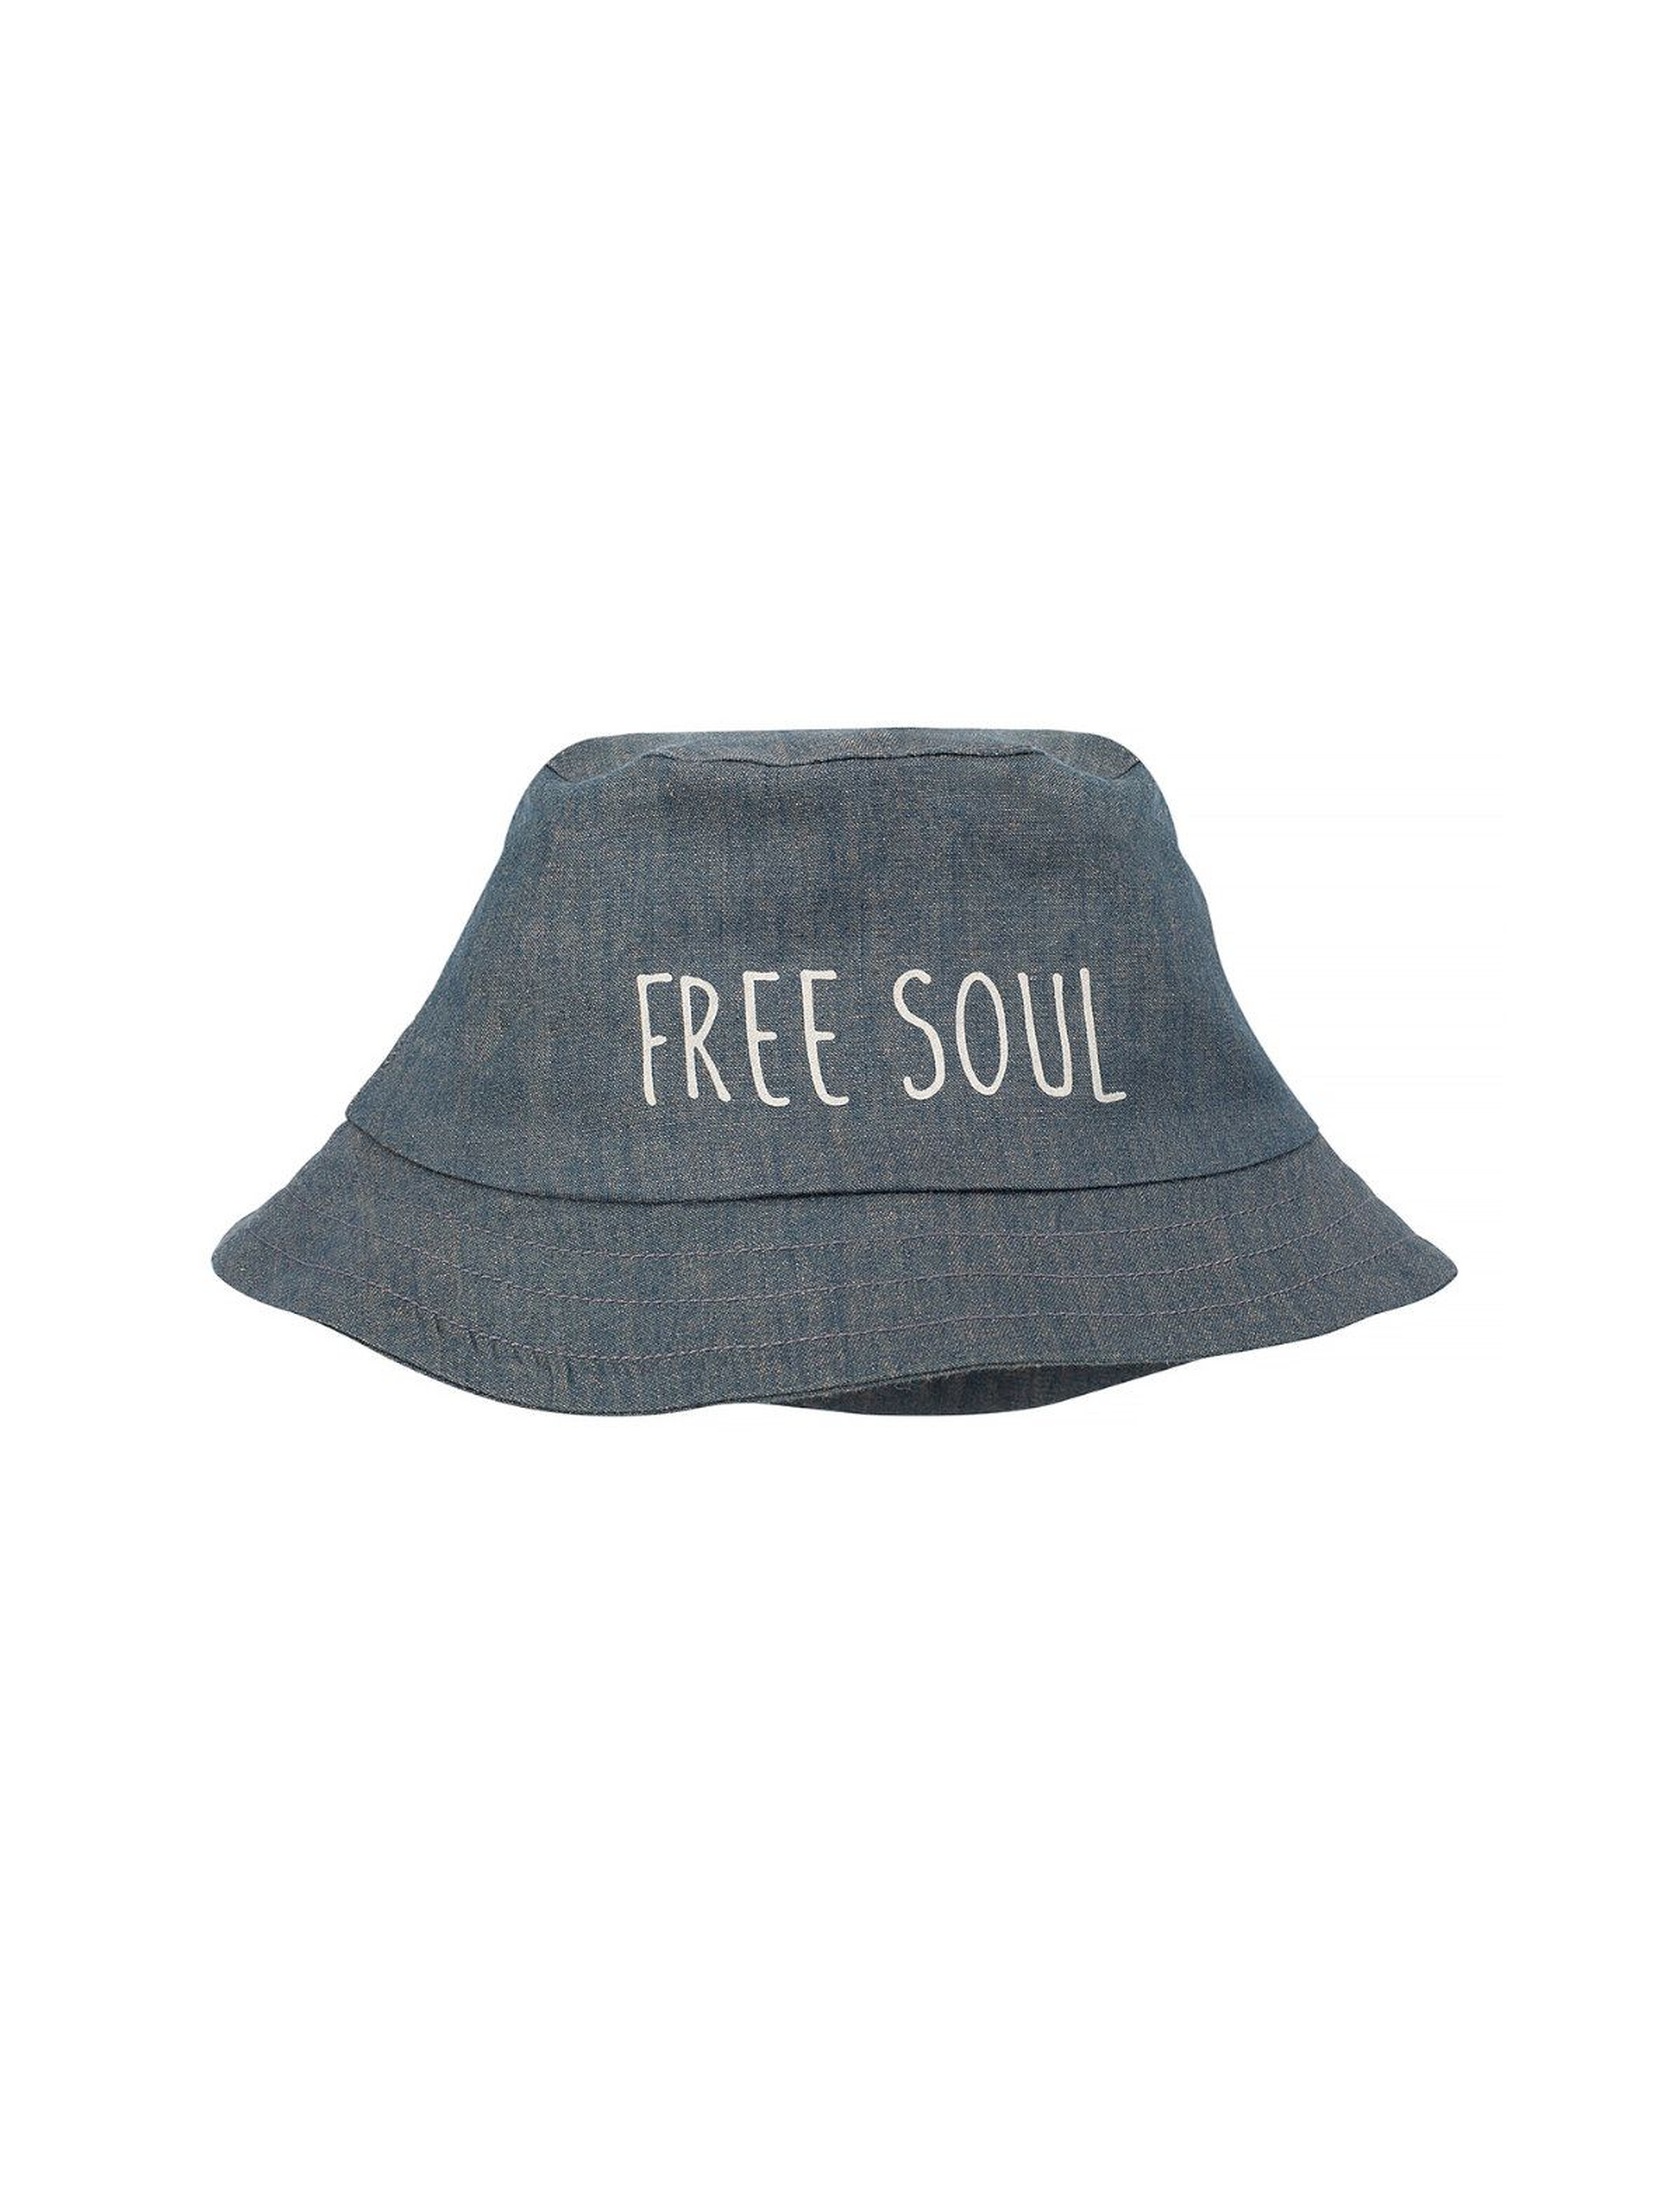 Bawełniany kapelusz FREE SOUL niebieski